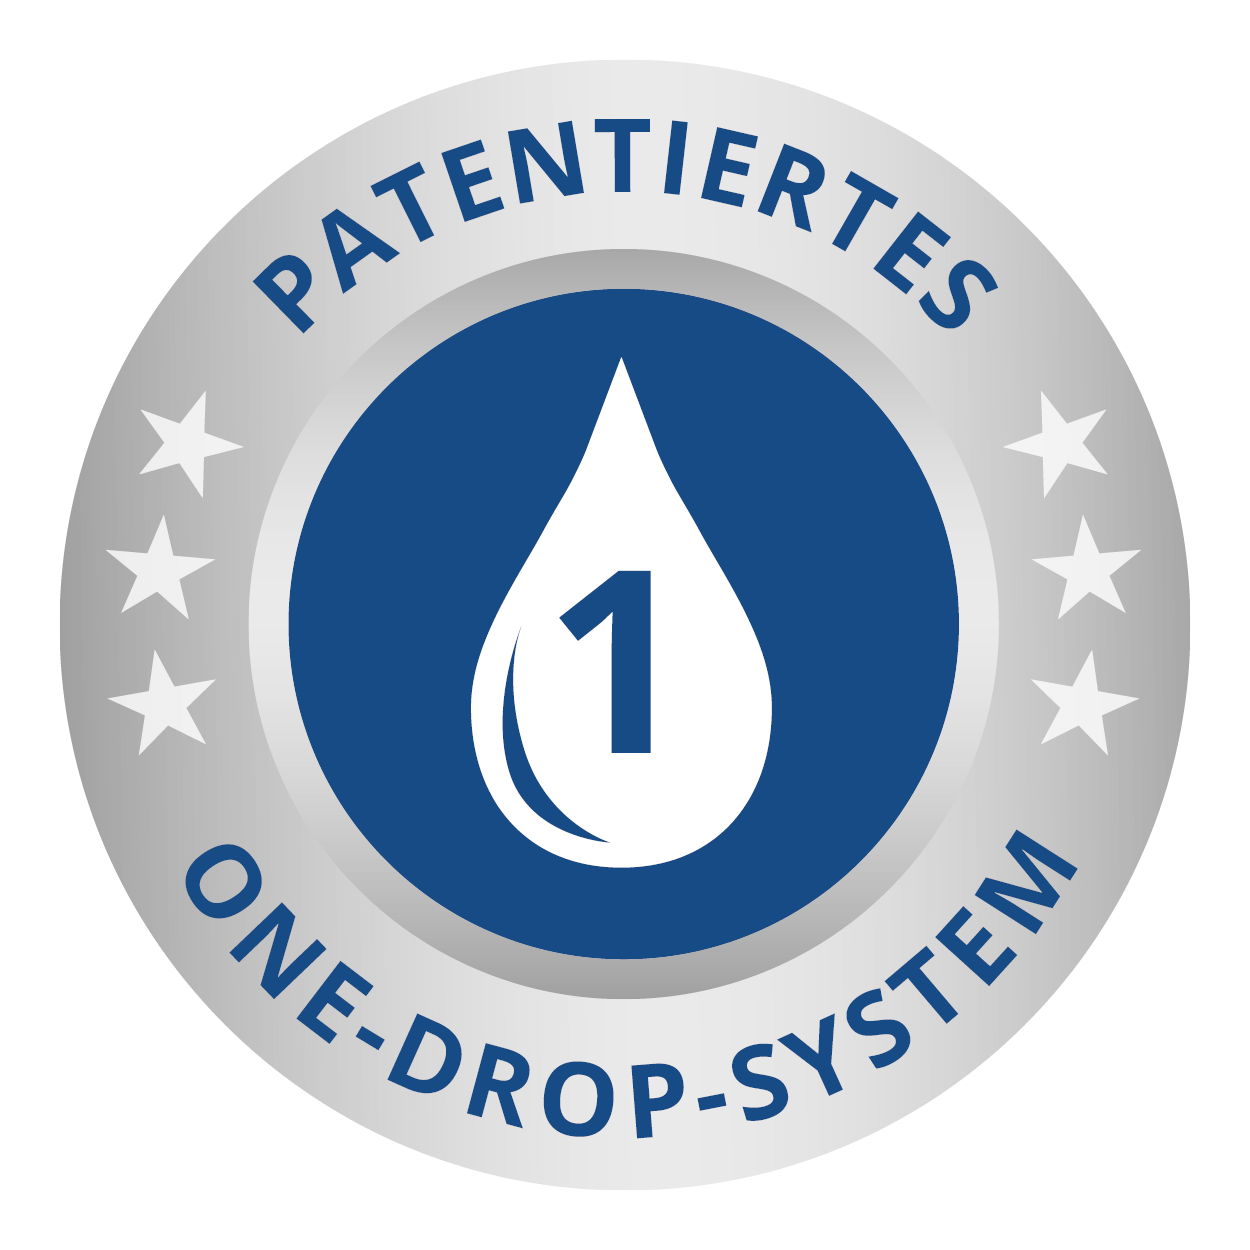 Qualitätssiegel Patentiertes One-Drop-System